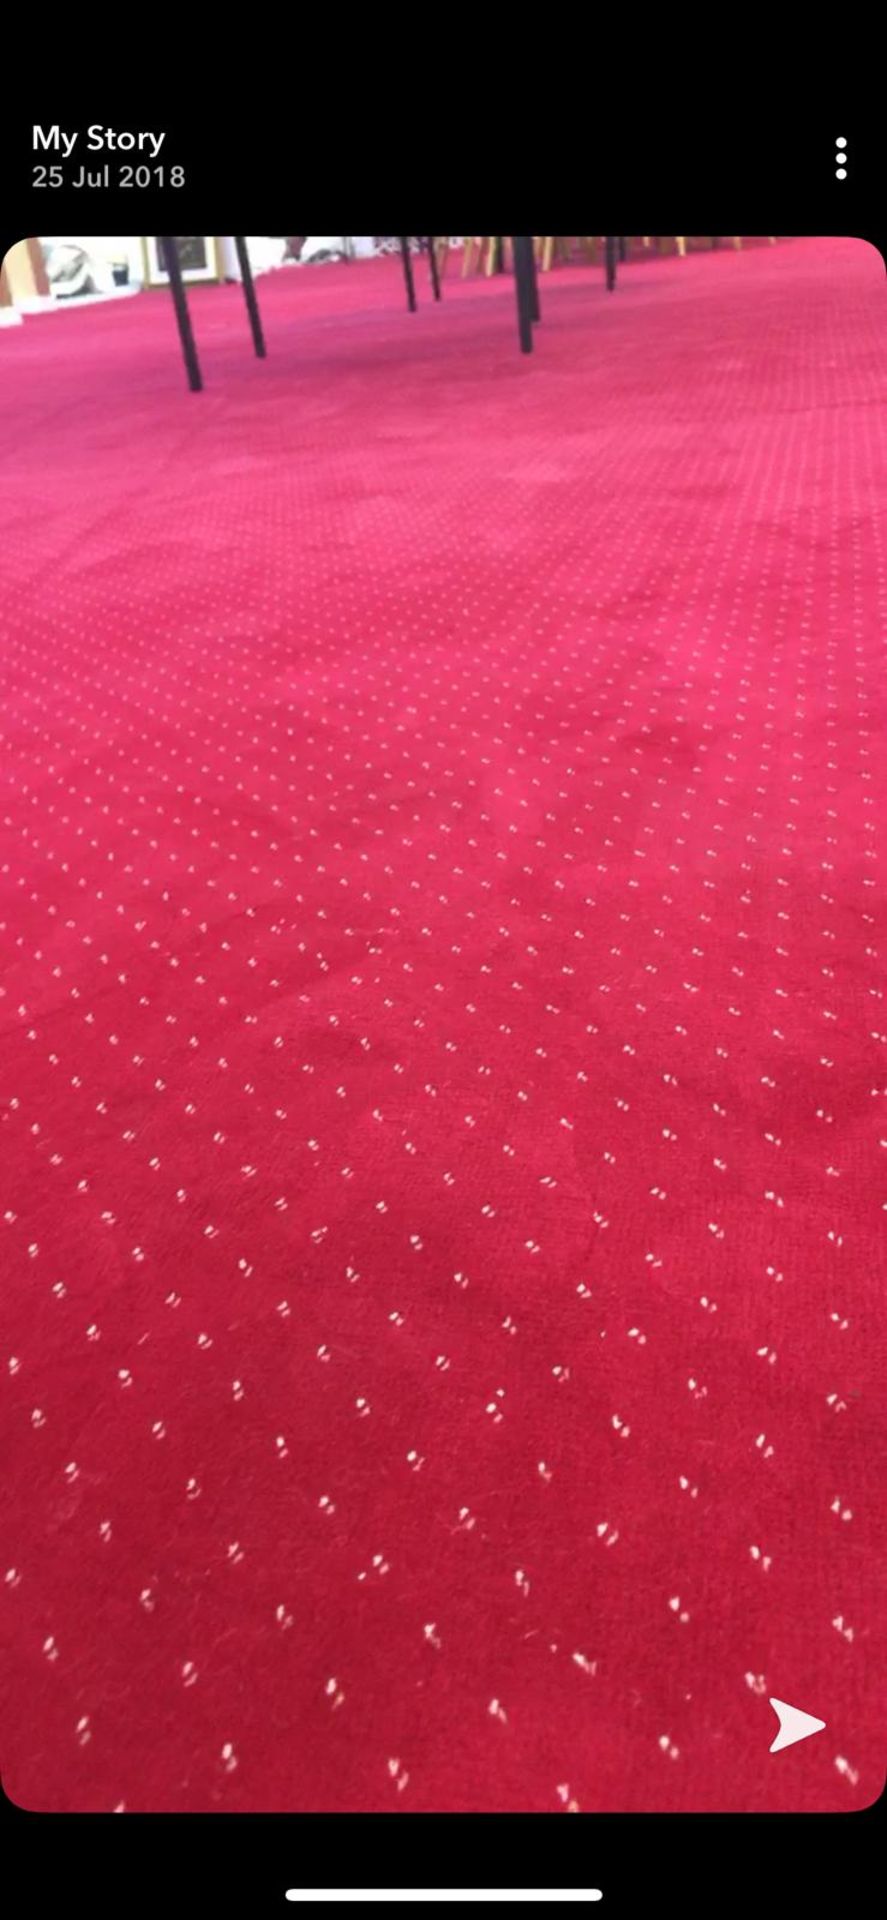 1 Roll, Red Wilton Carpet 13 metres x 4 Metres - Image 2 of 5